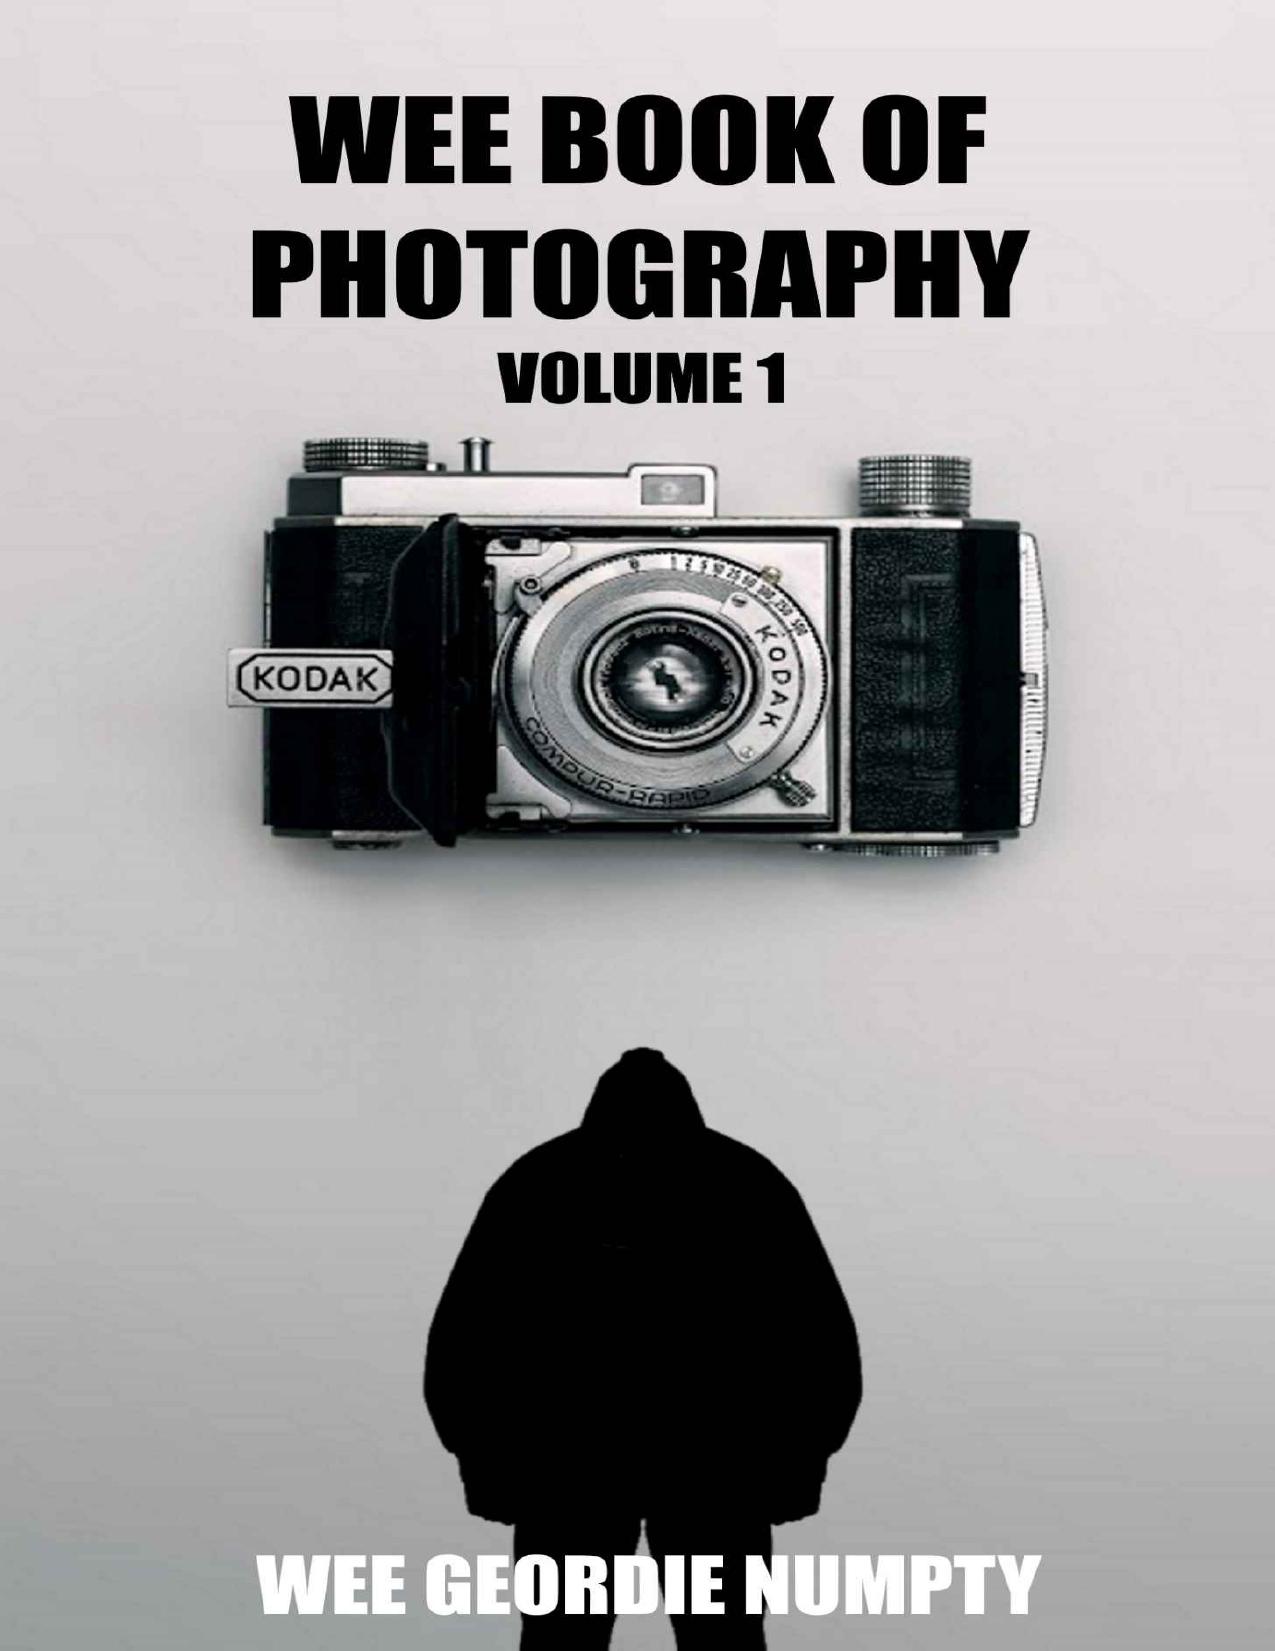 Wee Book Of Photography: Volume 1 by Wee Geordie Numpty